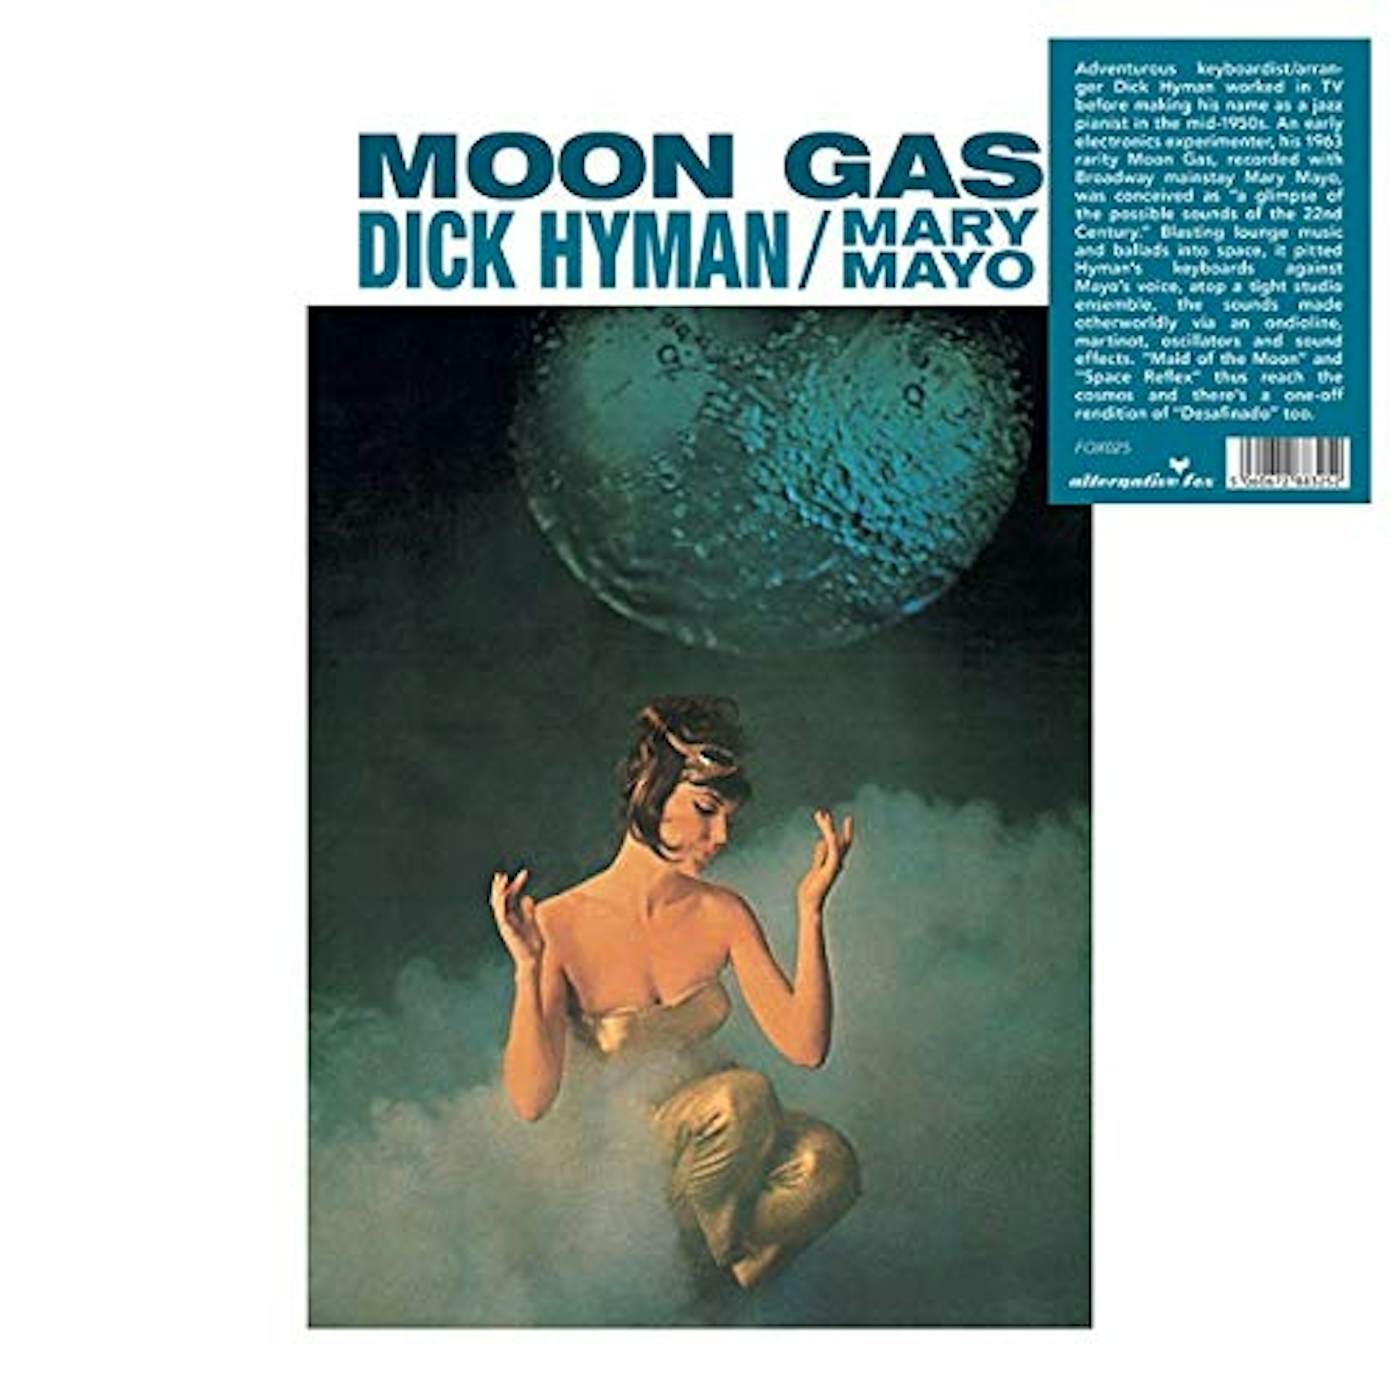 Dick Hyman & Mary Mayo Moon Gas Vinyl Record